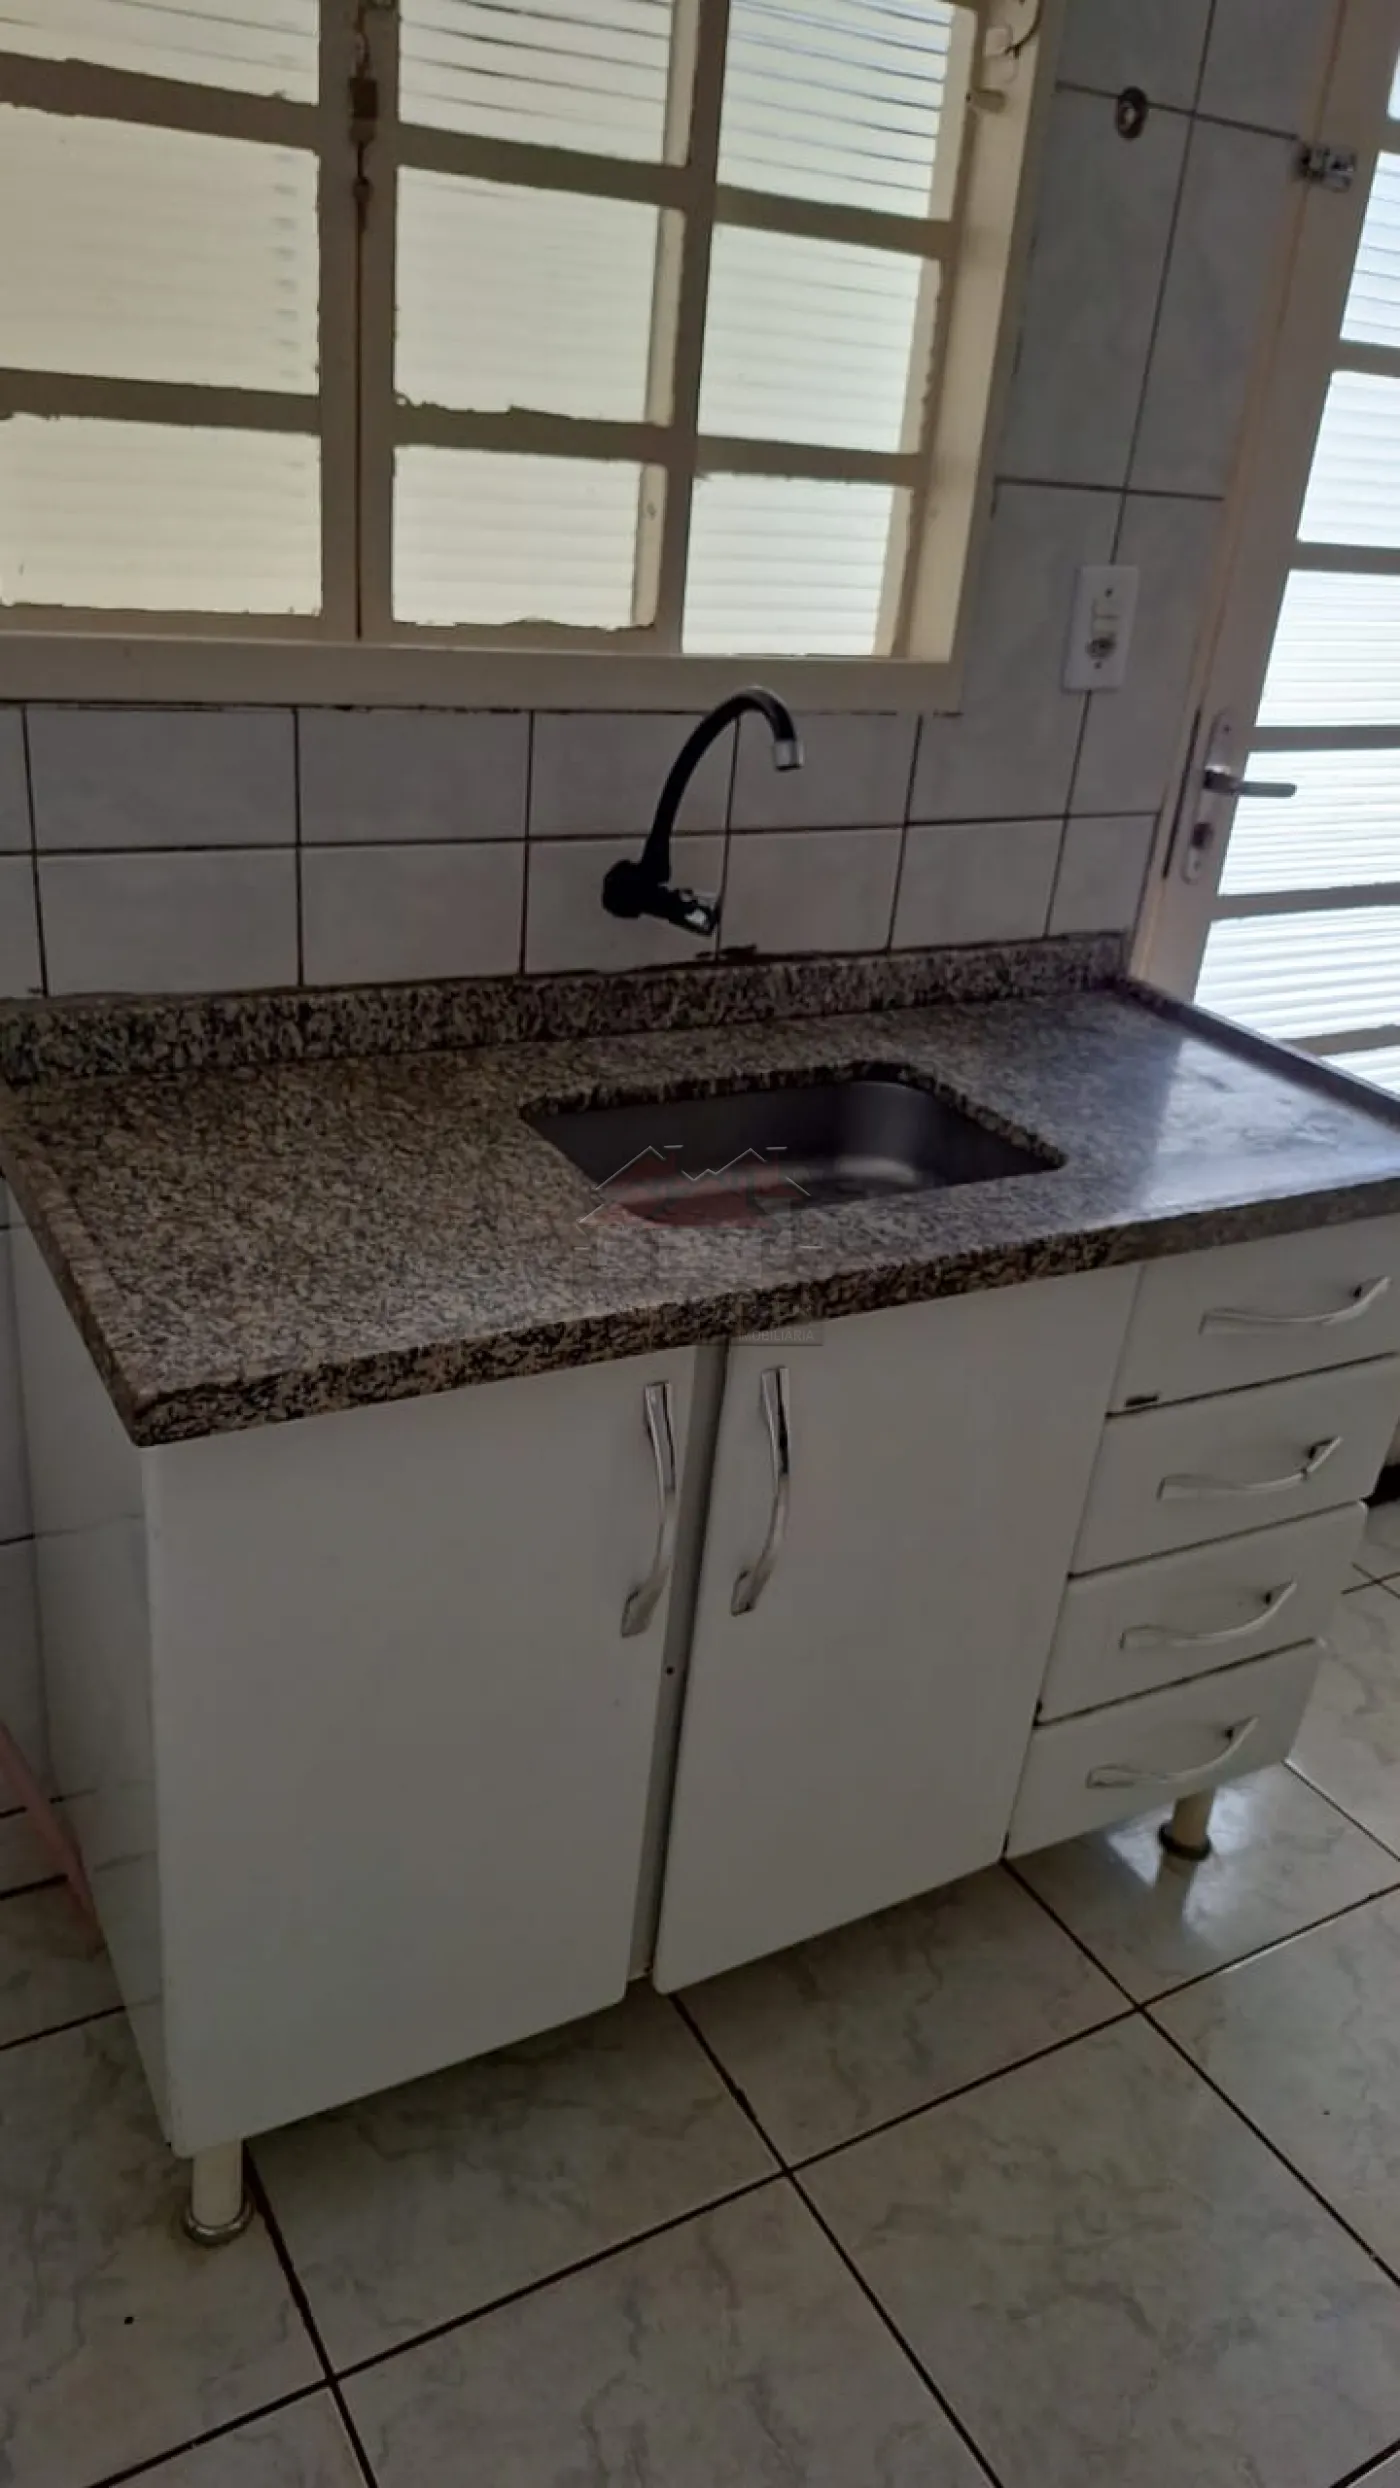 Alugar Casa / Padrão em Ribeirão Preto R$ 1.000,00 - Foto 6